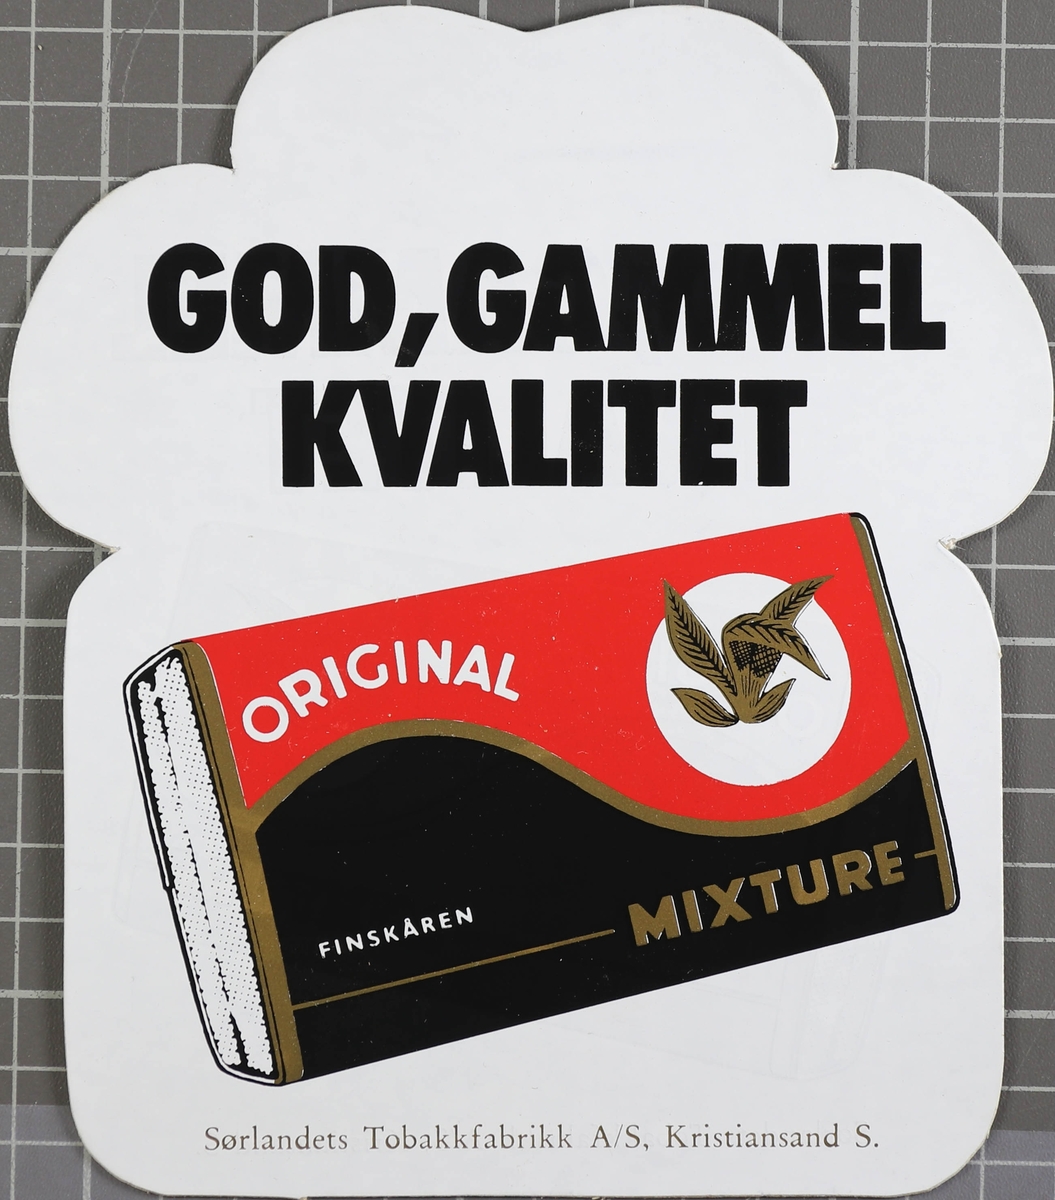 En pakke Original Mixture, over står teksten "God, gammel kvalitet"